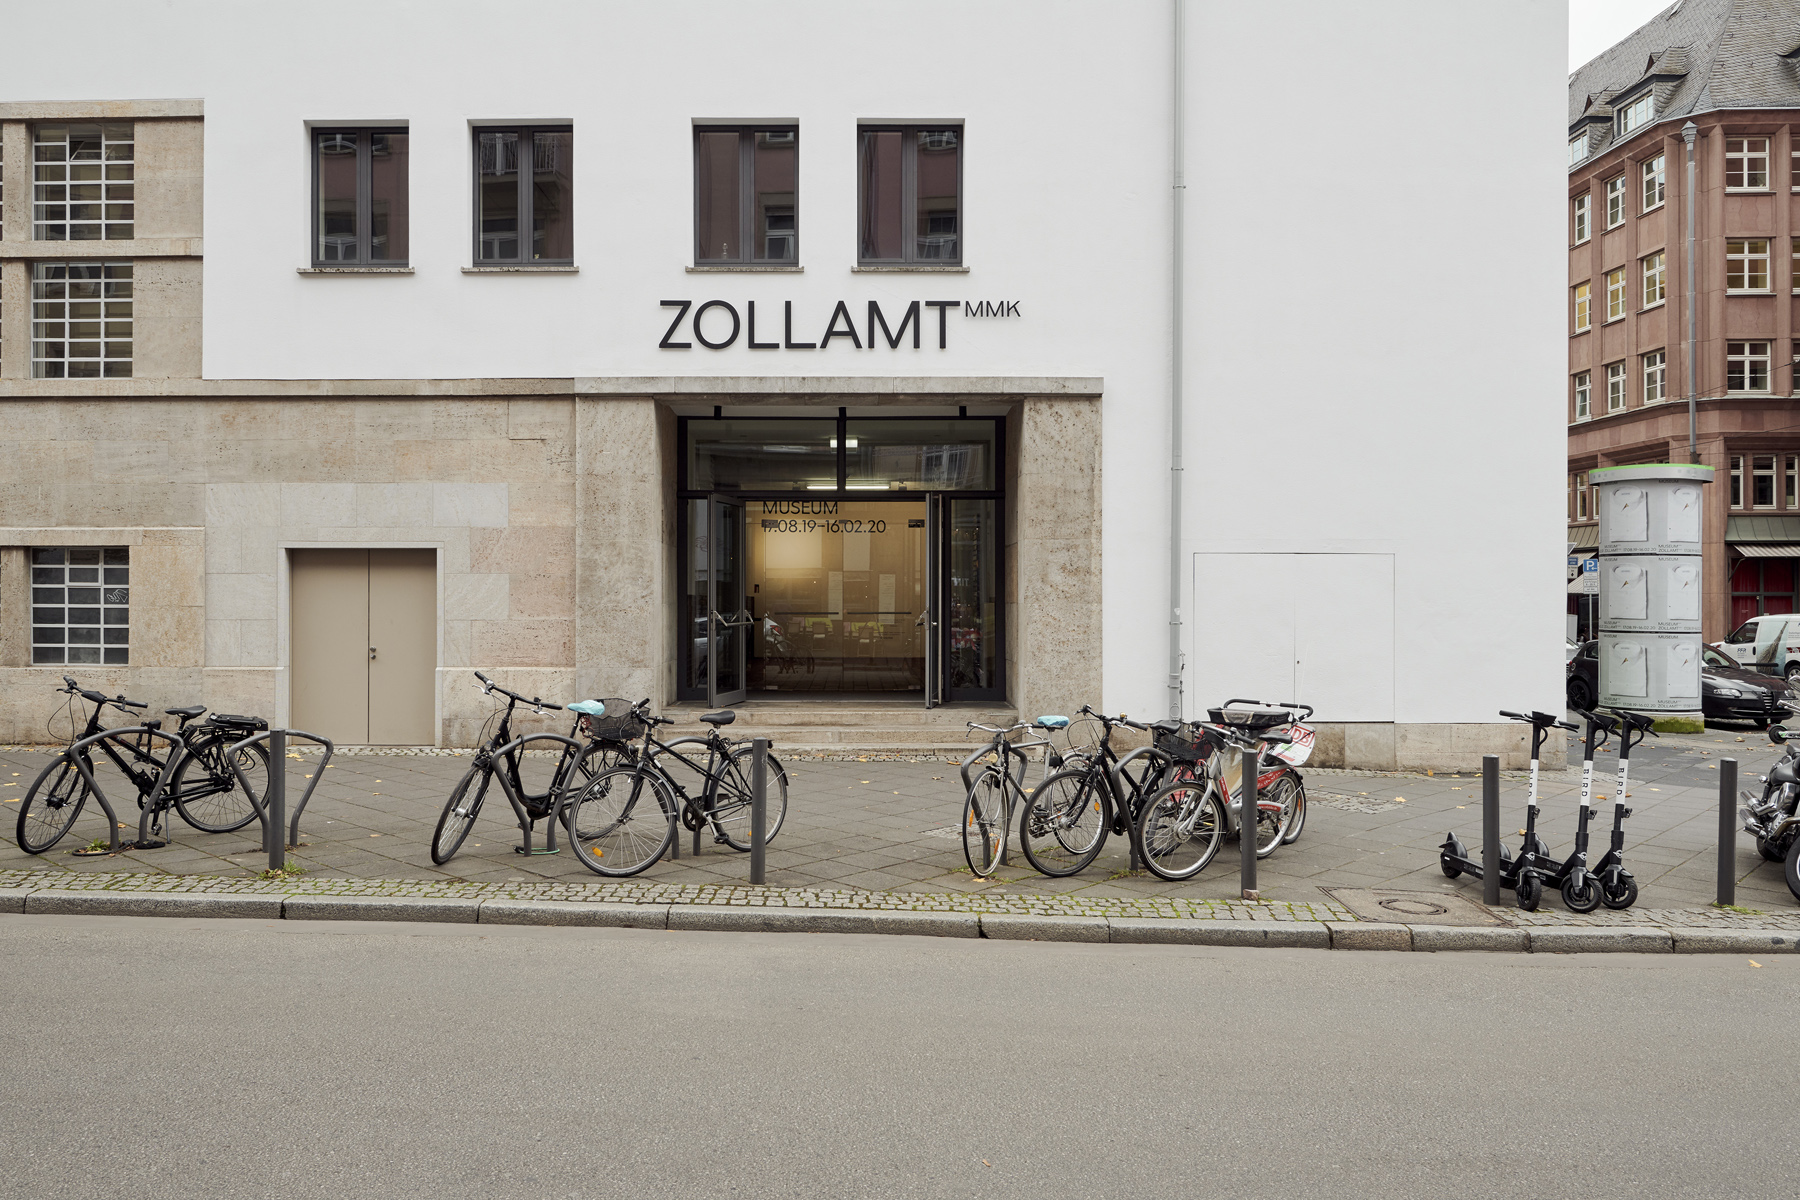 Außenansicht bzw. Eingang Zollamt MMK, vor dem Gebäude stehen einige Fahrräder